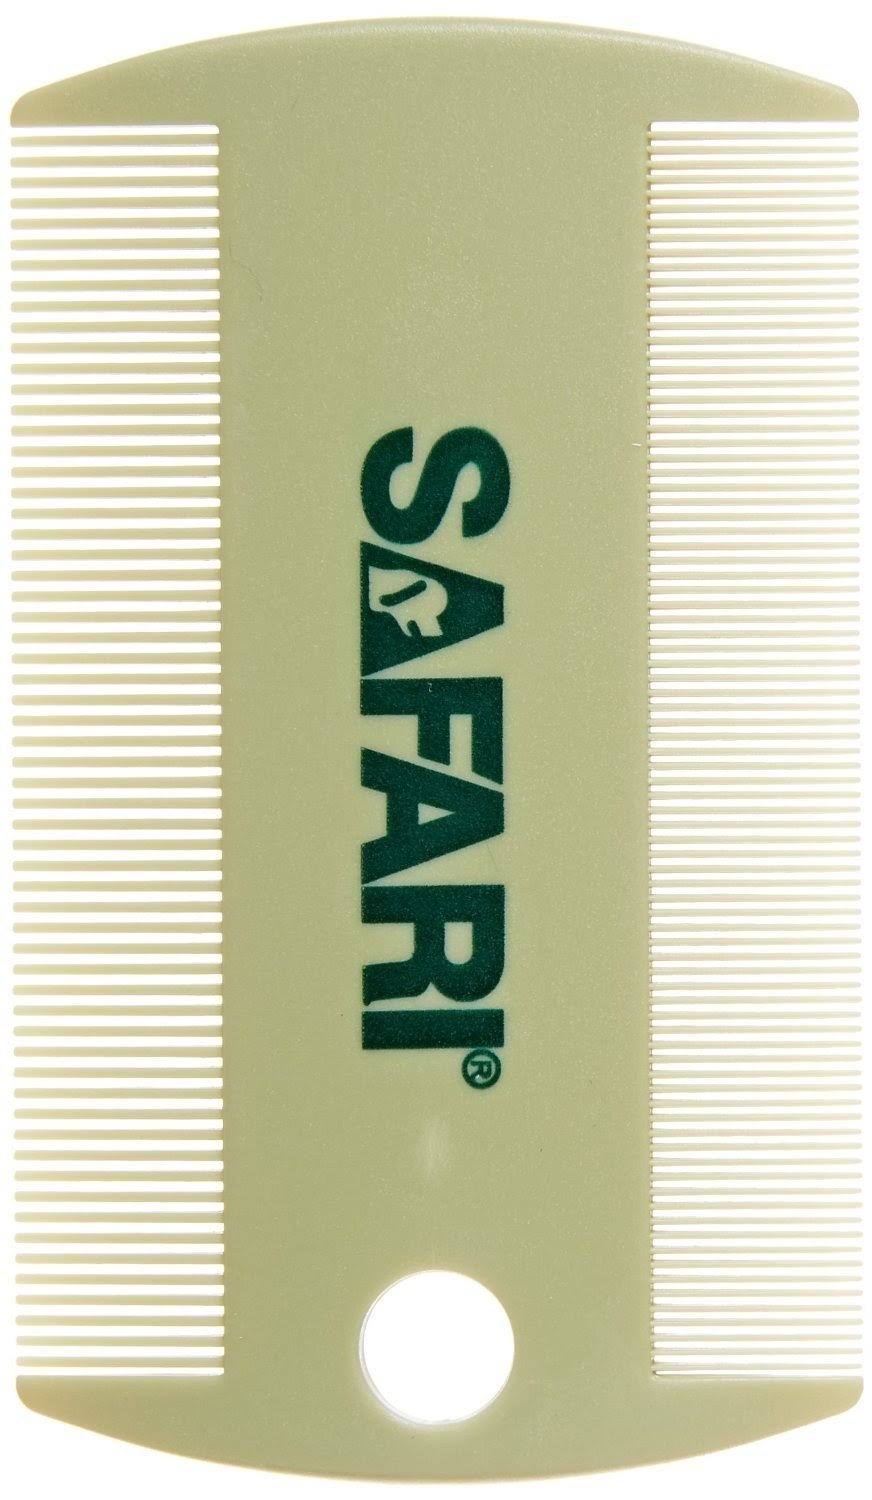 Safari Plastic Flea Comb